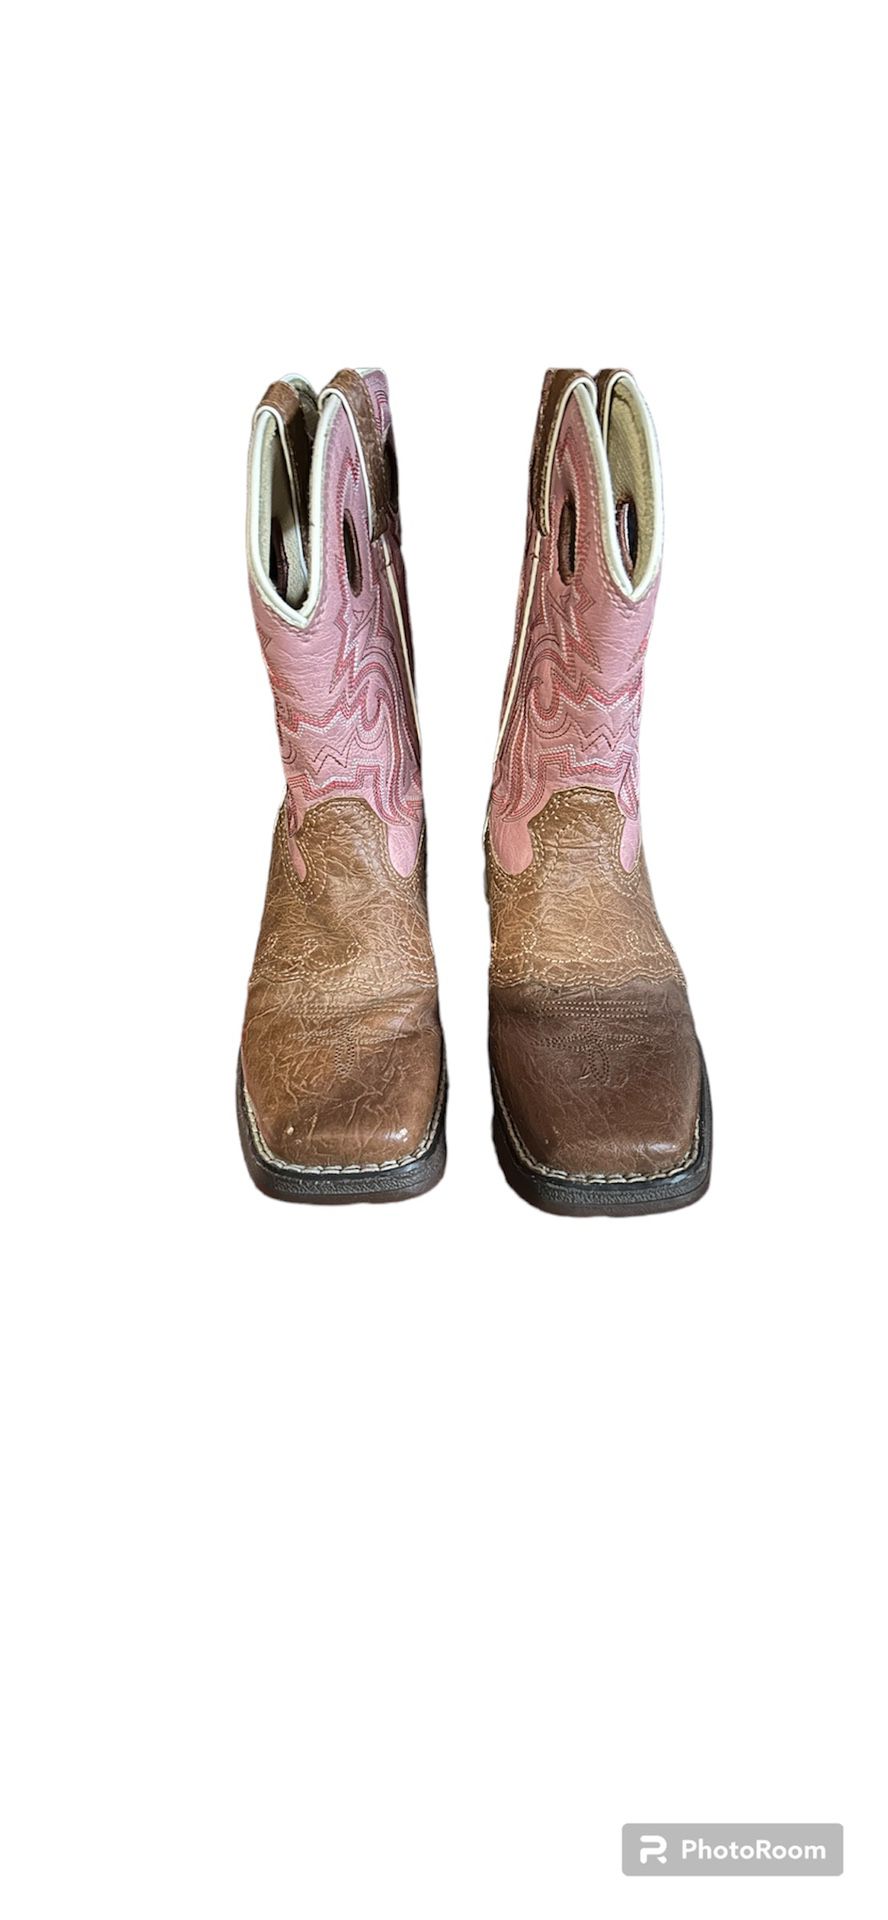 Little Girls Cowboy Boots 